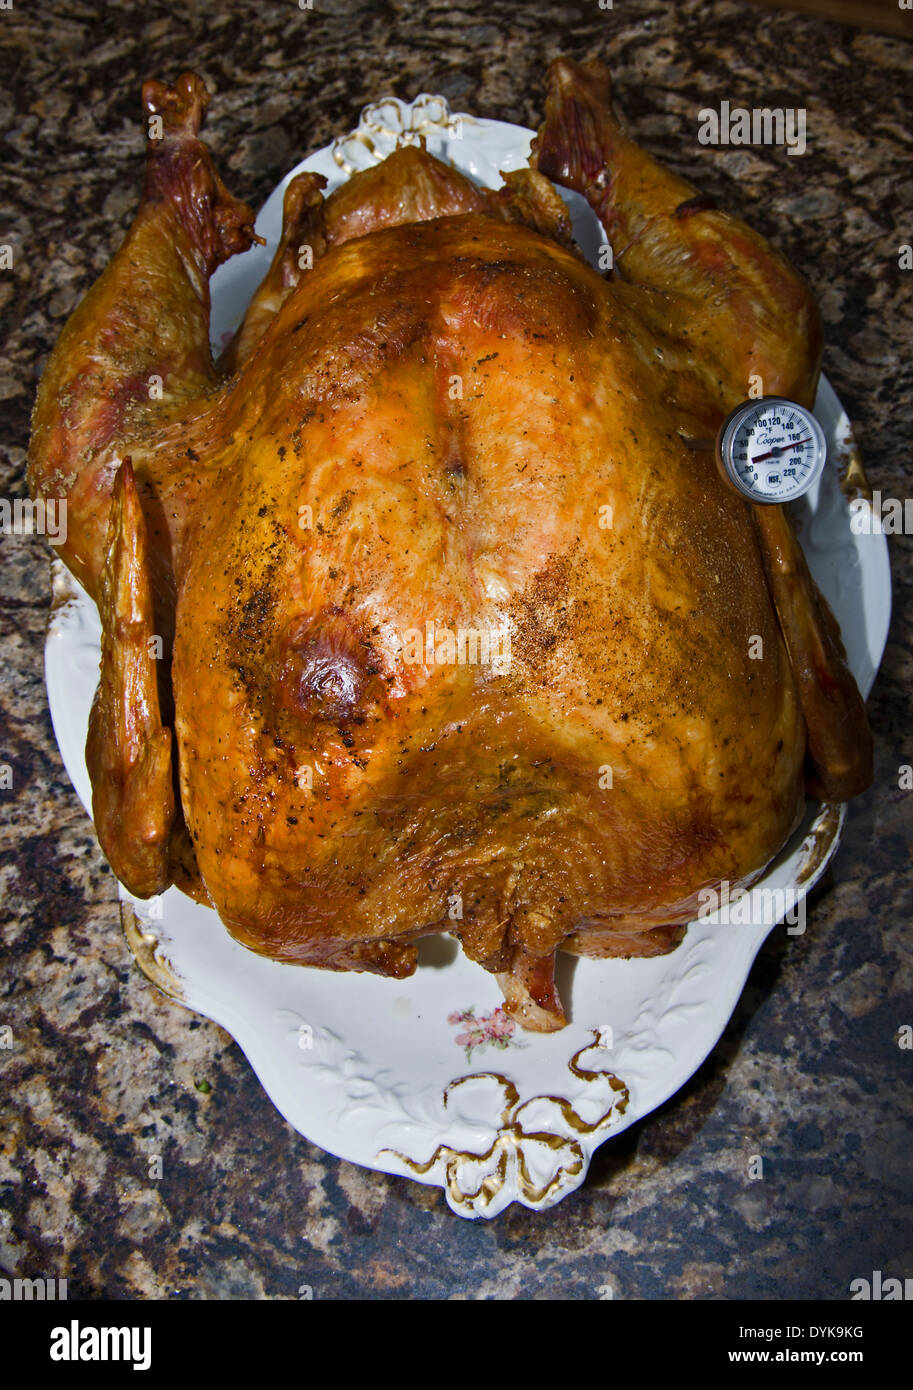 https://c8.alamy.com/comp/DYK9KG/roast-turkey-with-thermometer-DYK9KG.jpg